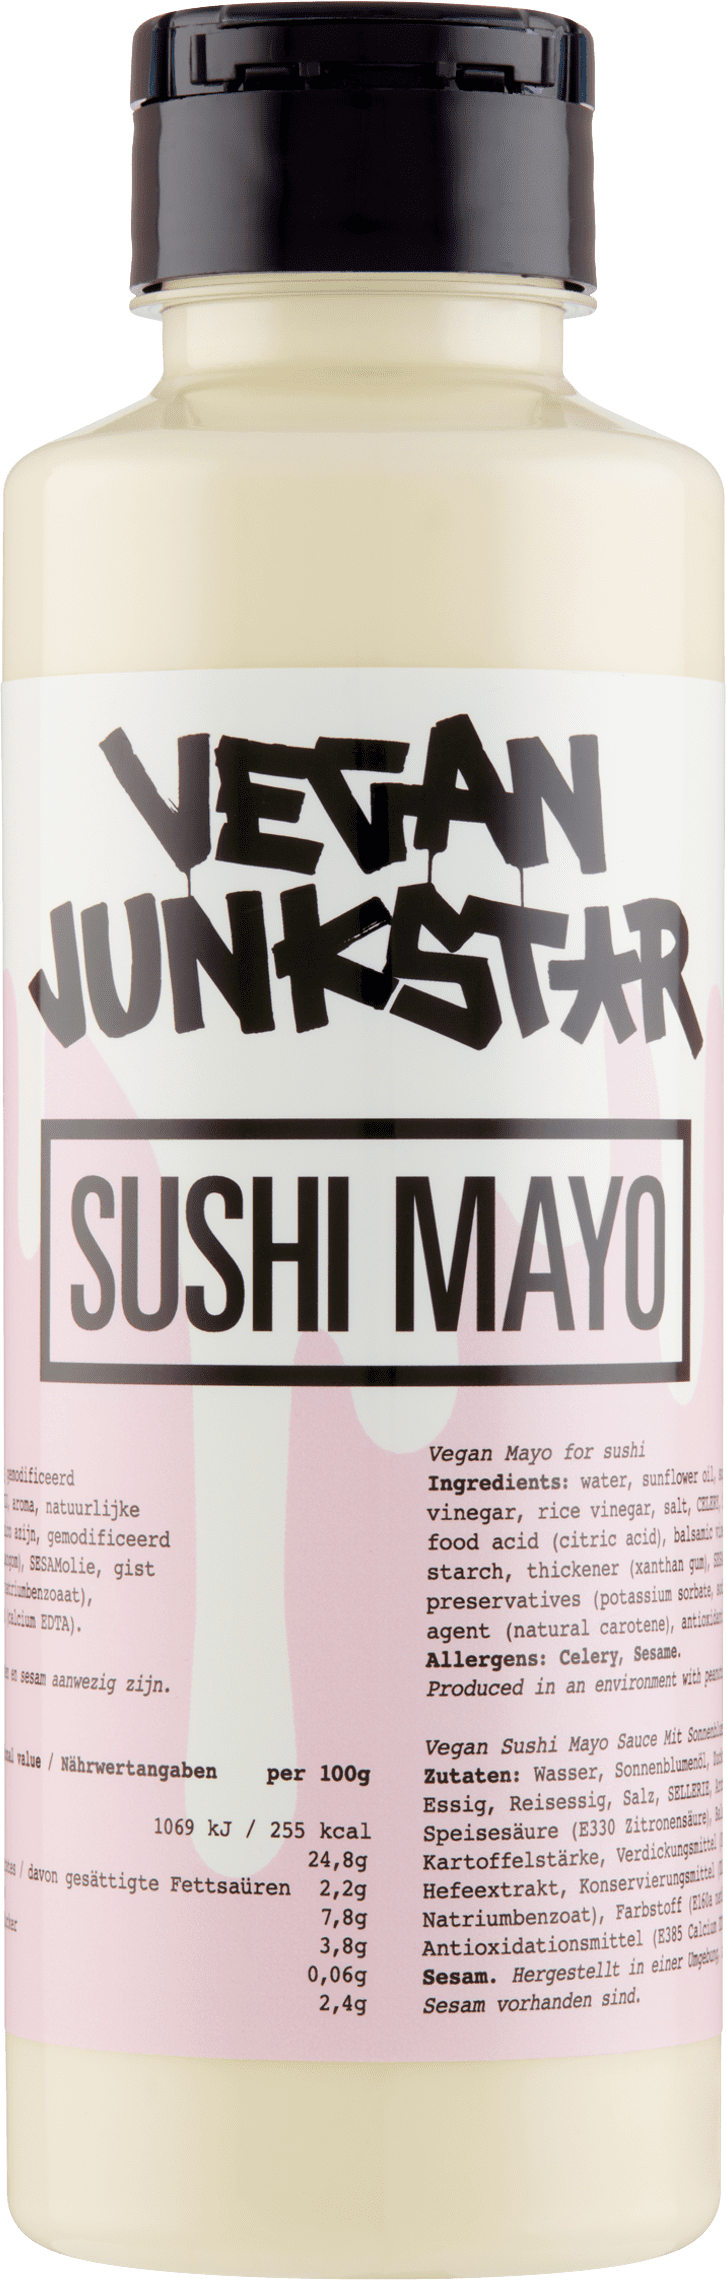 Vegan Junkstar | Sushi Mayo